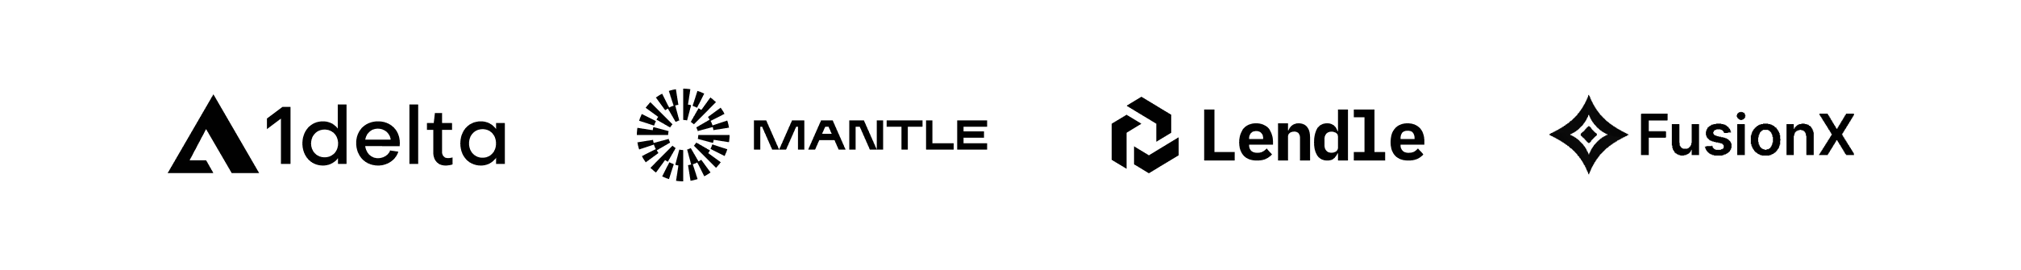 mantle-collab-logos-2